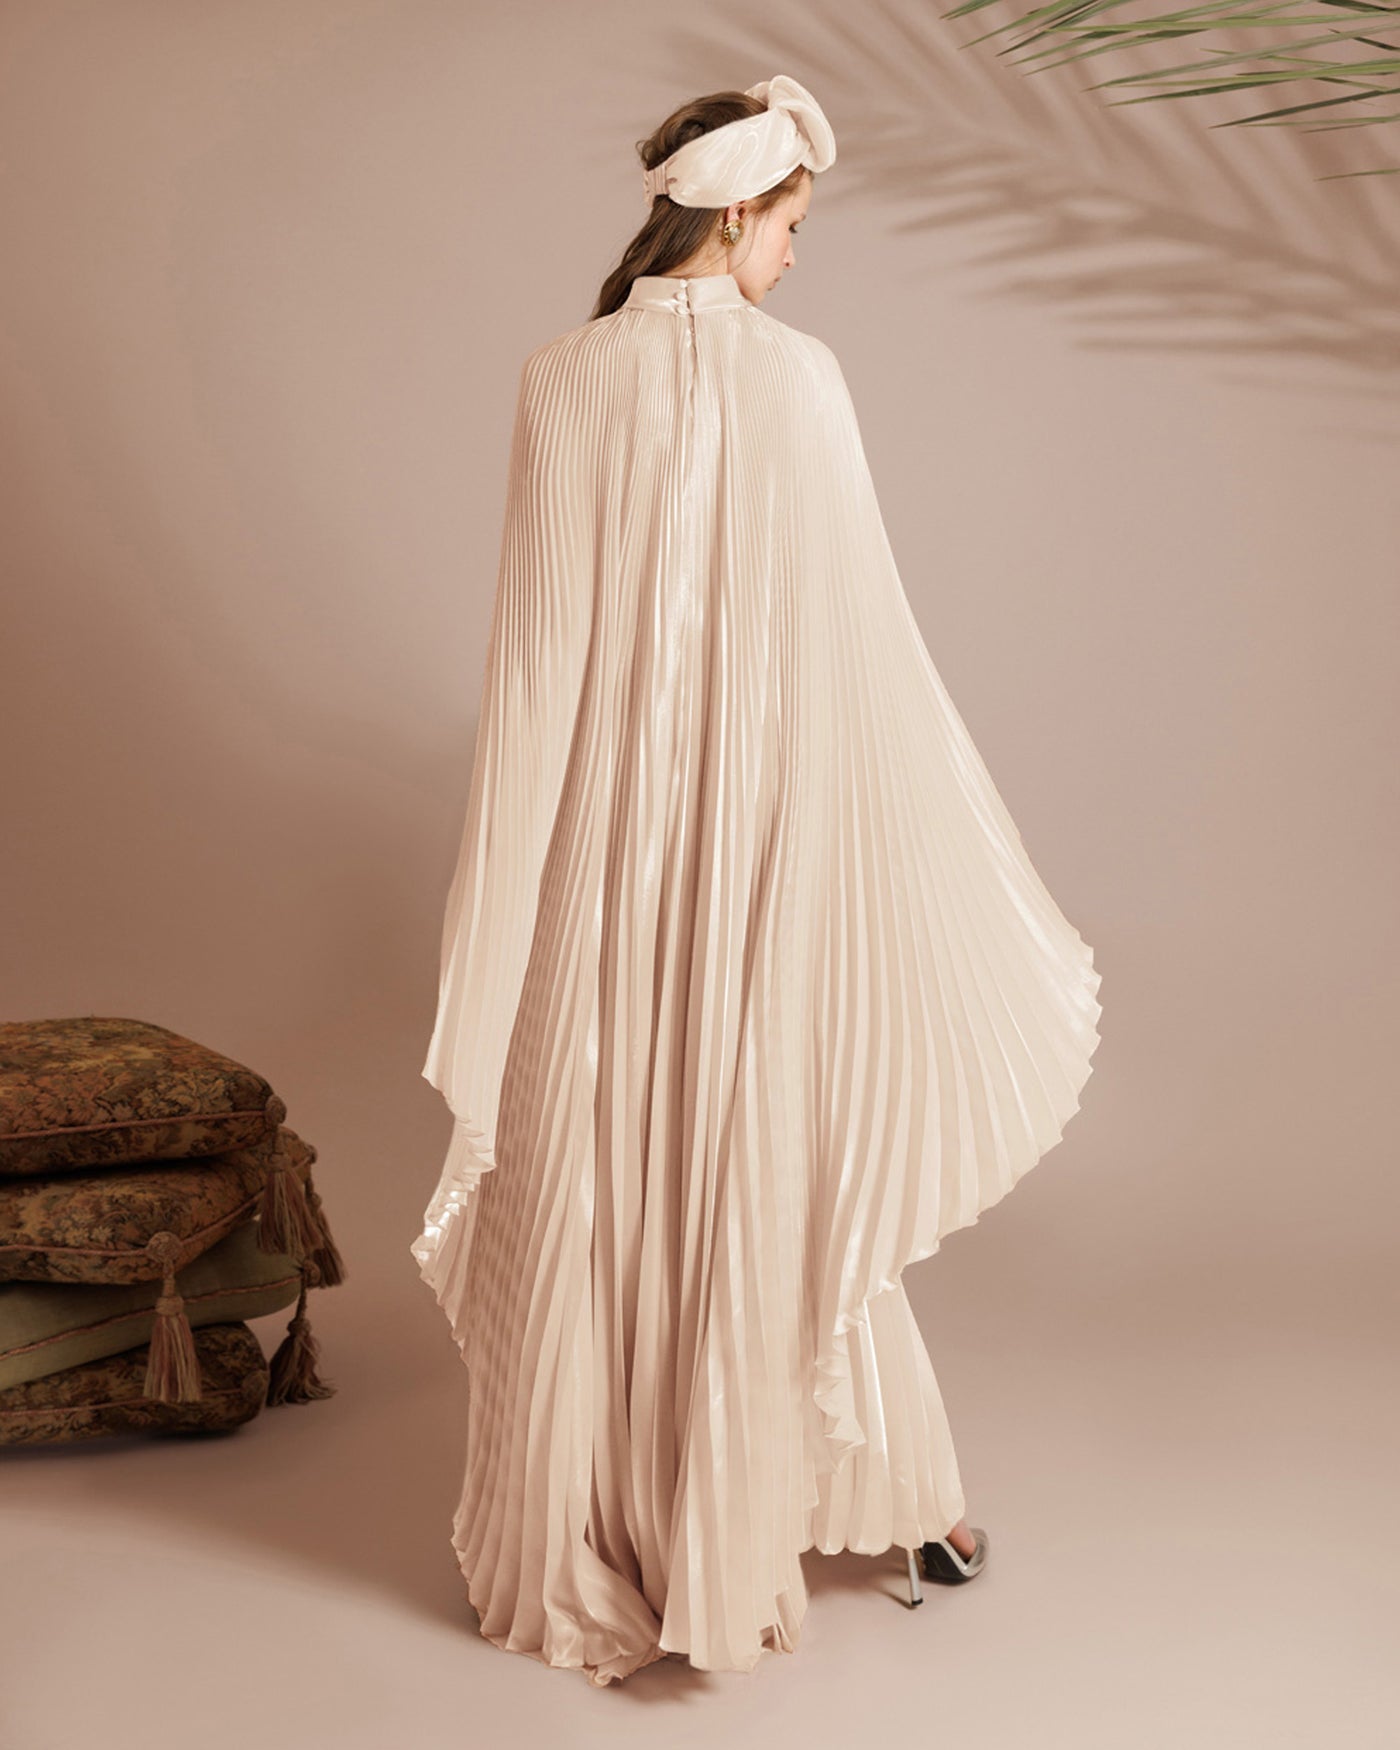 Cape-Like Sleeves Ivory Dress